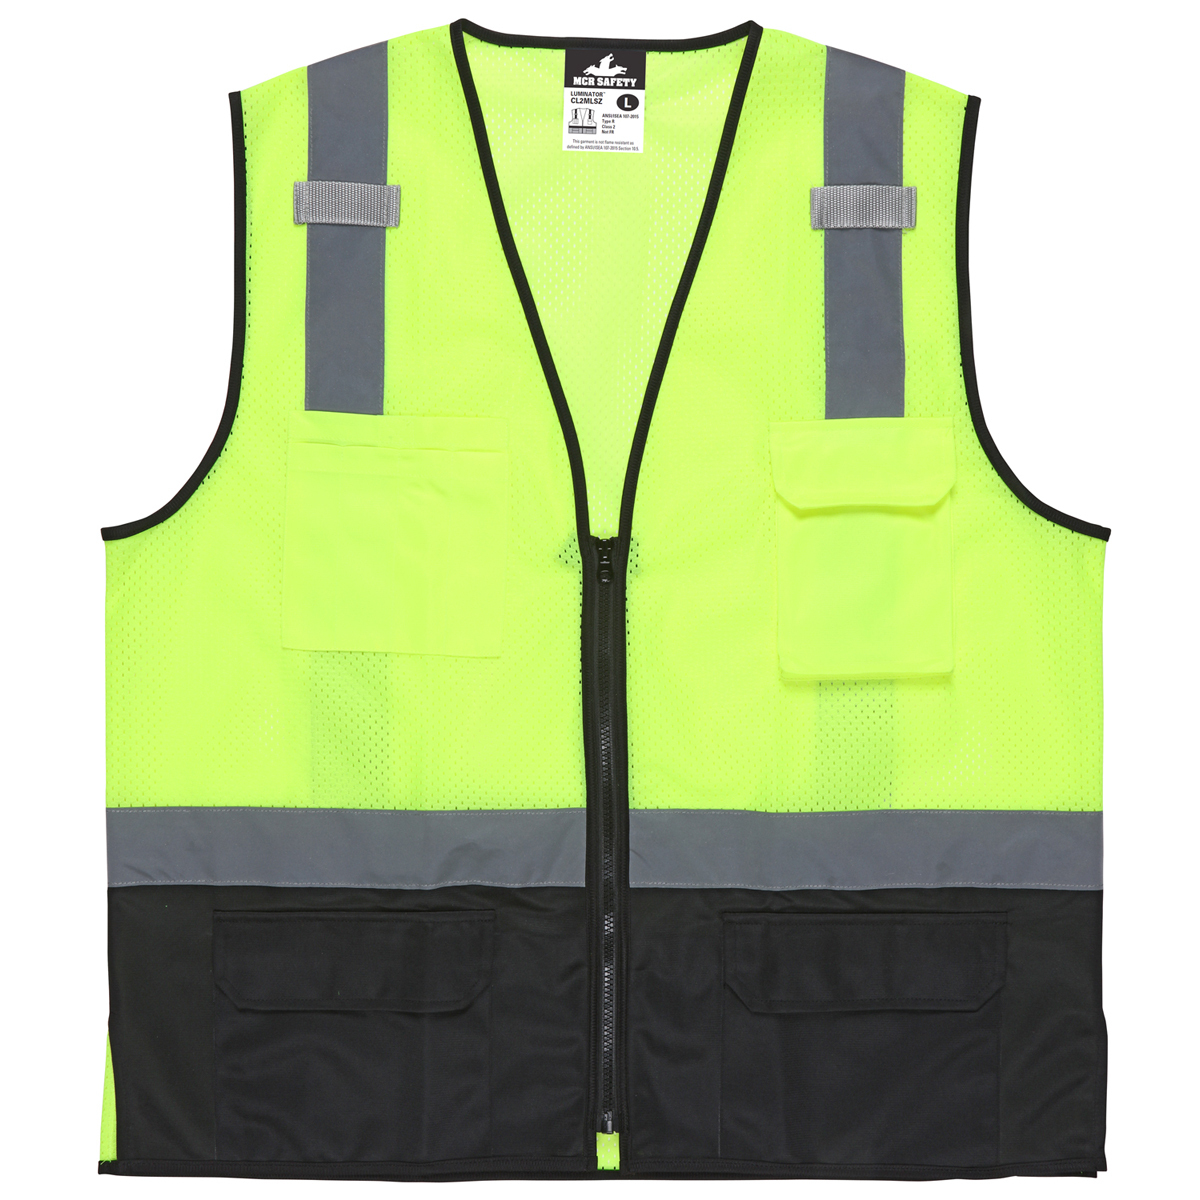 MCR Safety® X-Large Hi-Viz Lime, Black And Silver MCR Safety® Polyester/Polyester Mesh Safety Vest